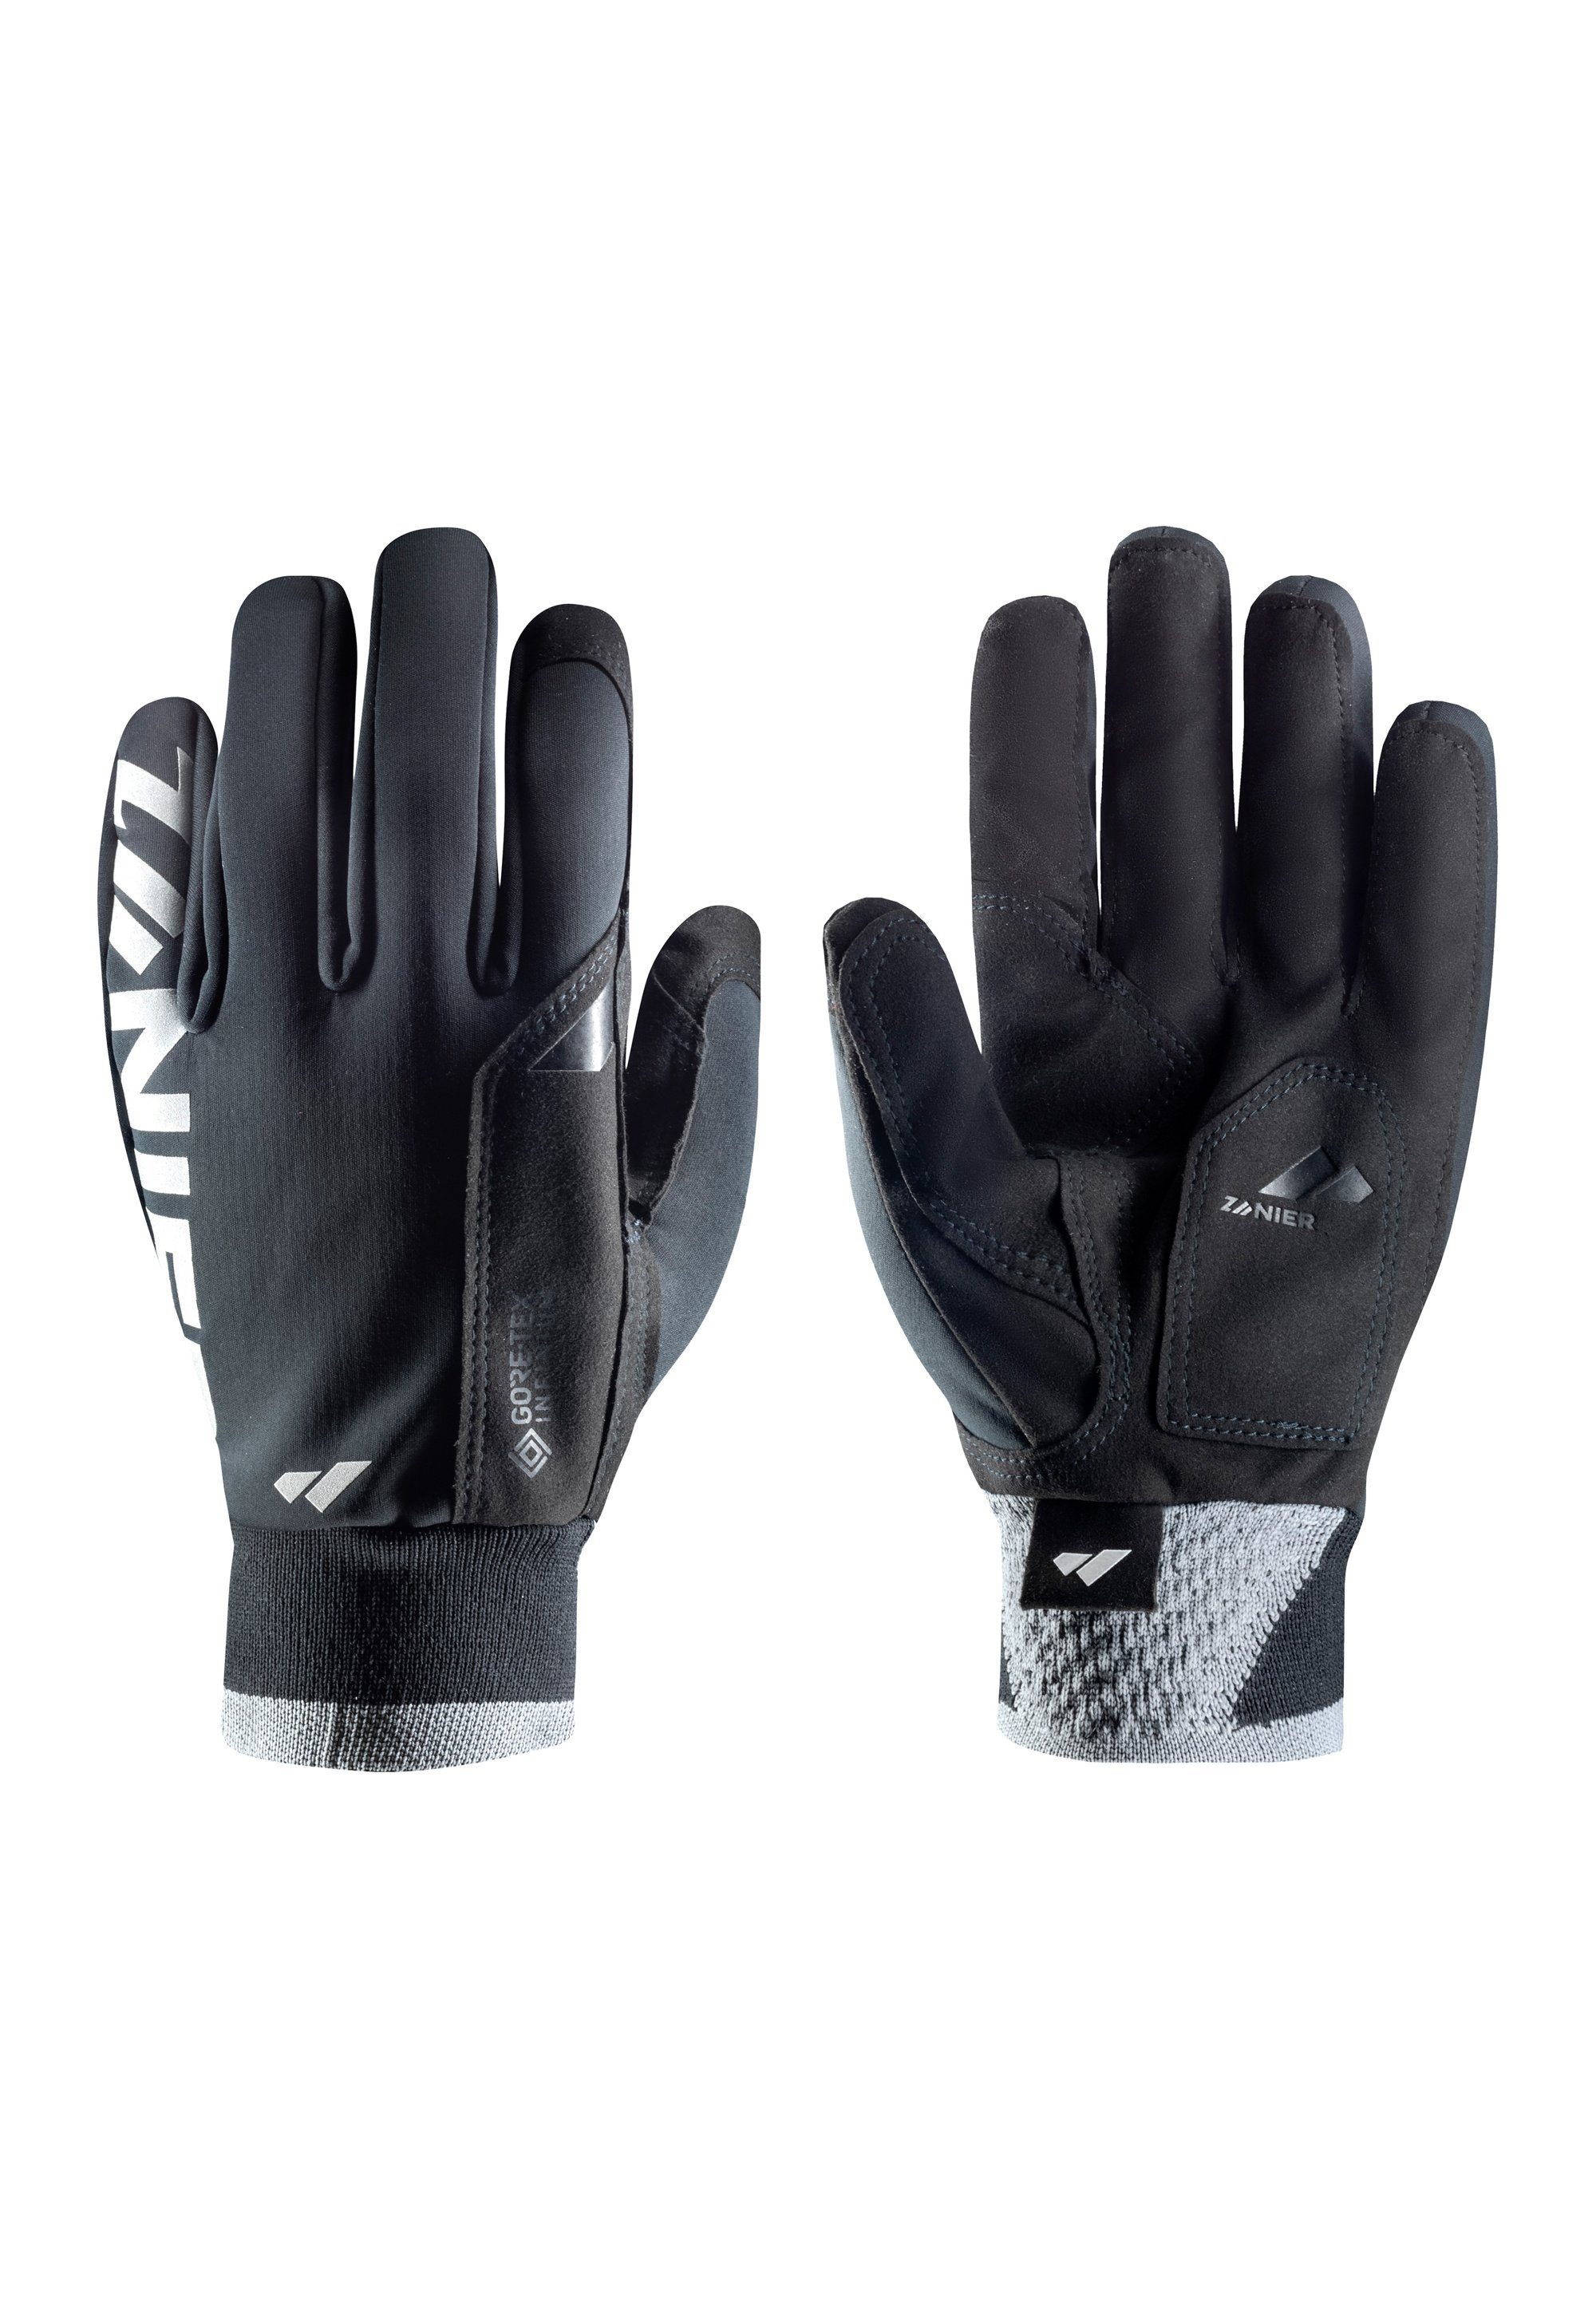 Aktuell beliebt Zanier Multisporthandschuhe XC gloves We PRO focus on